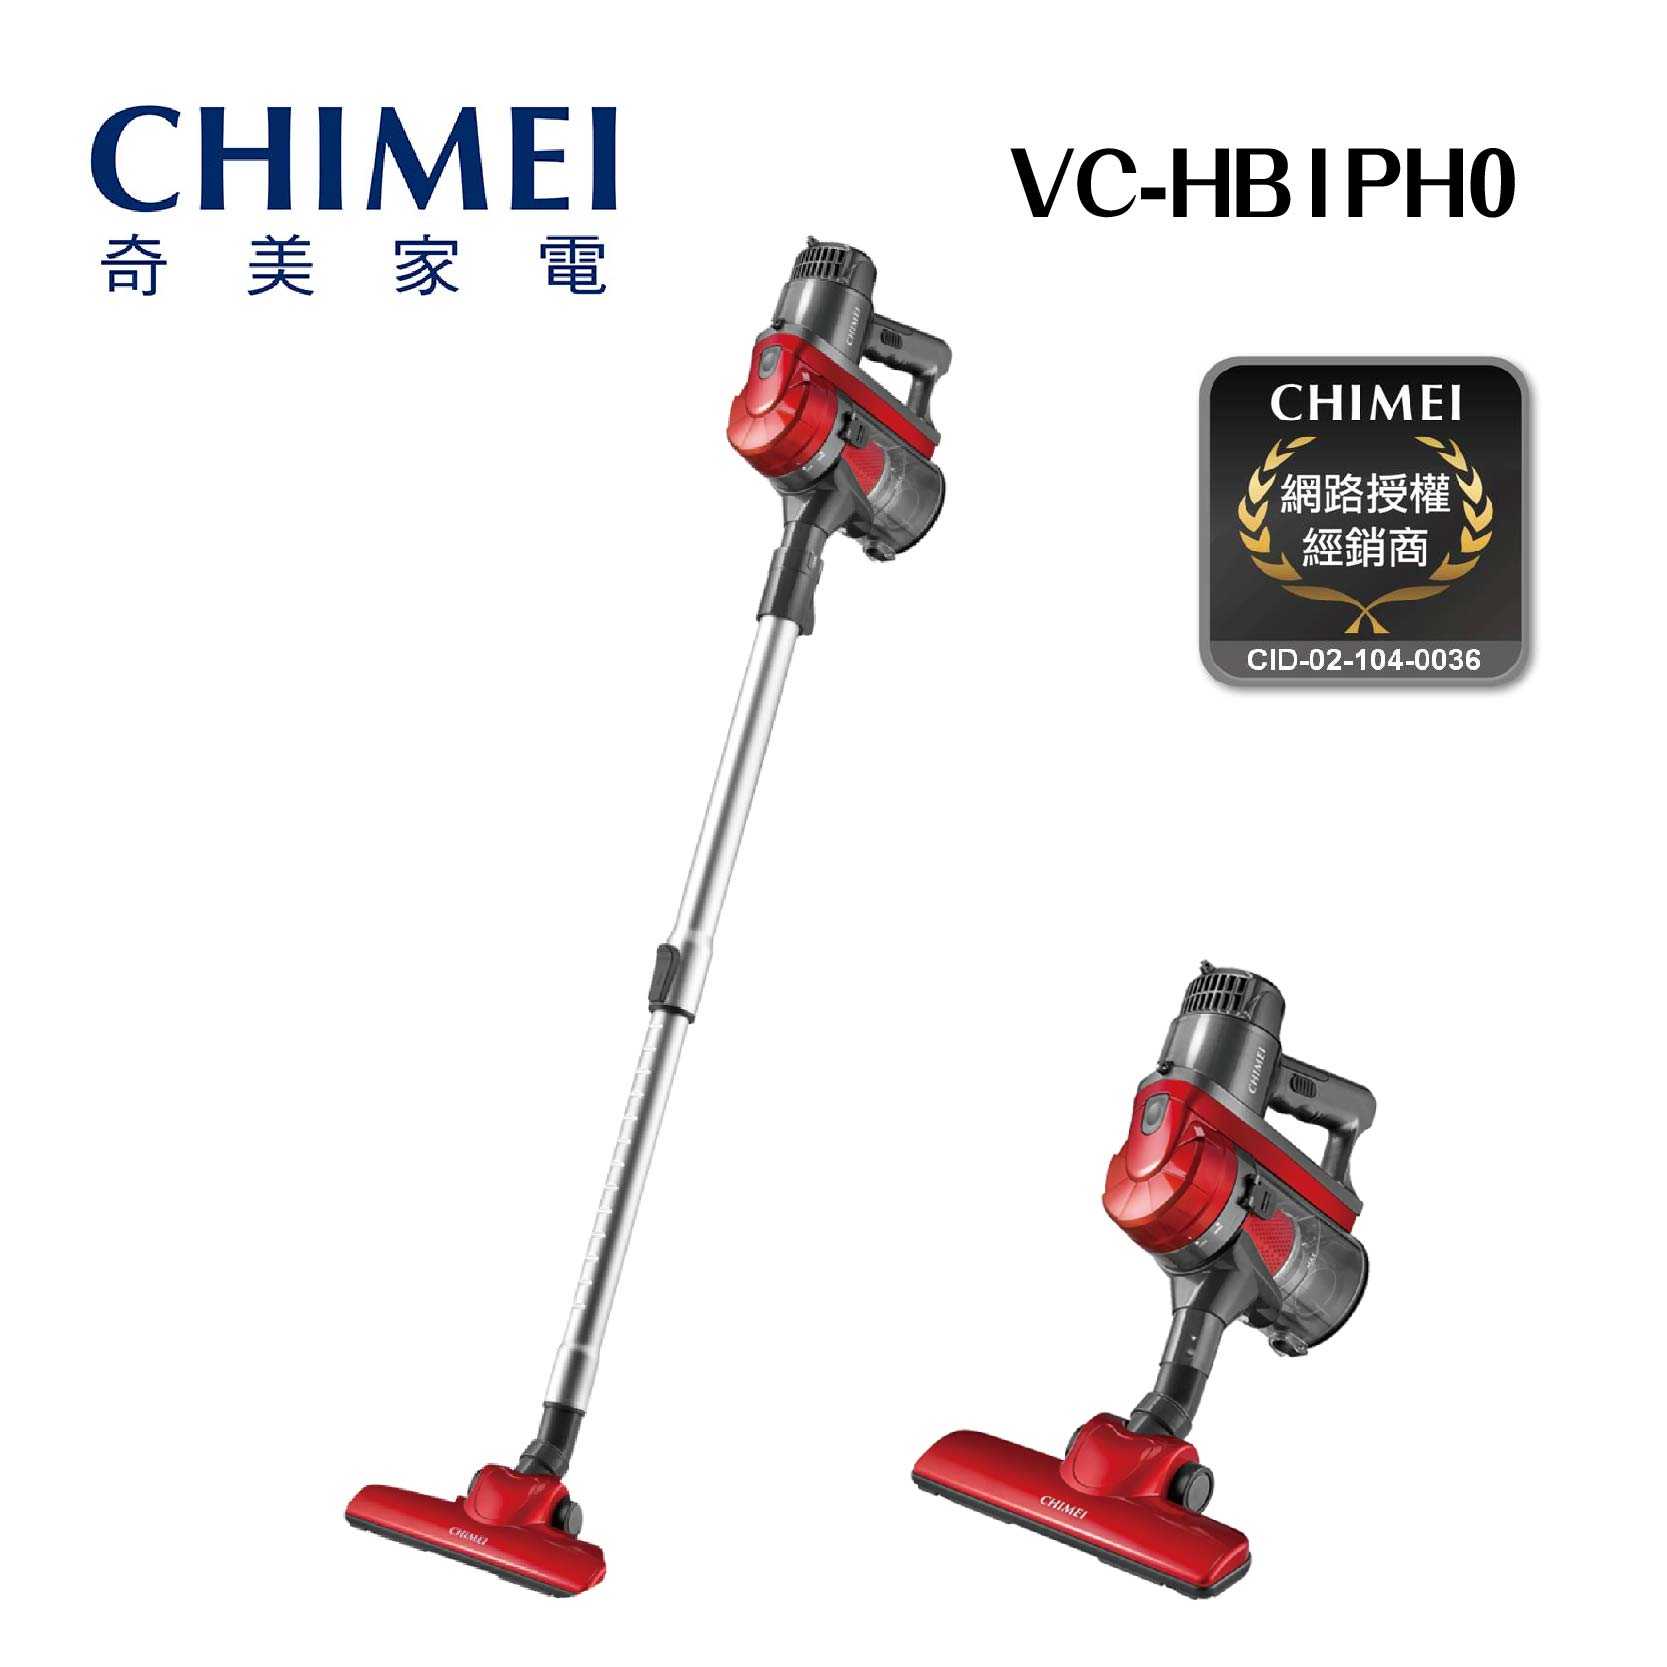 原廠新品『CHIMEI奇美手持多功能強力氣旋吸塵器』 VC-HB1PH0 手持 直立 大吸力